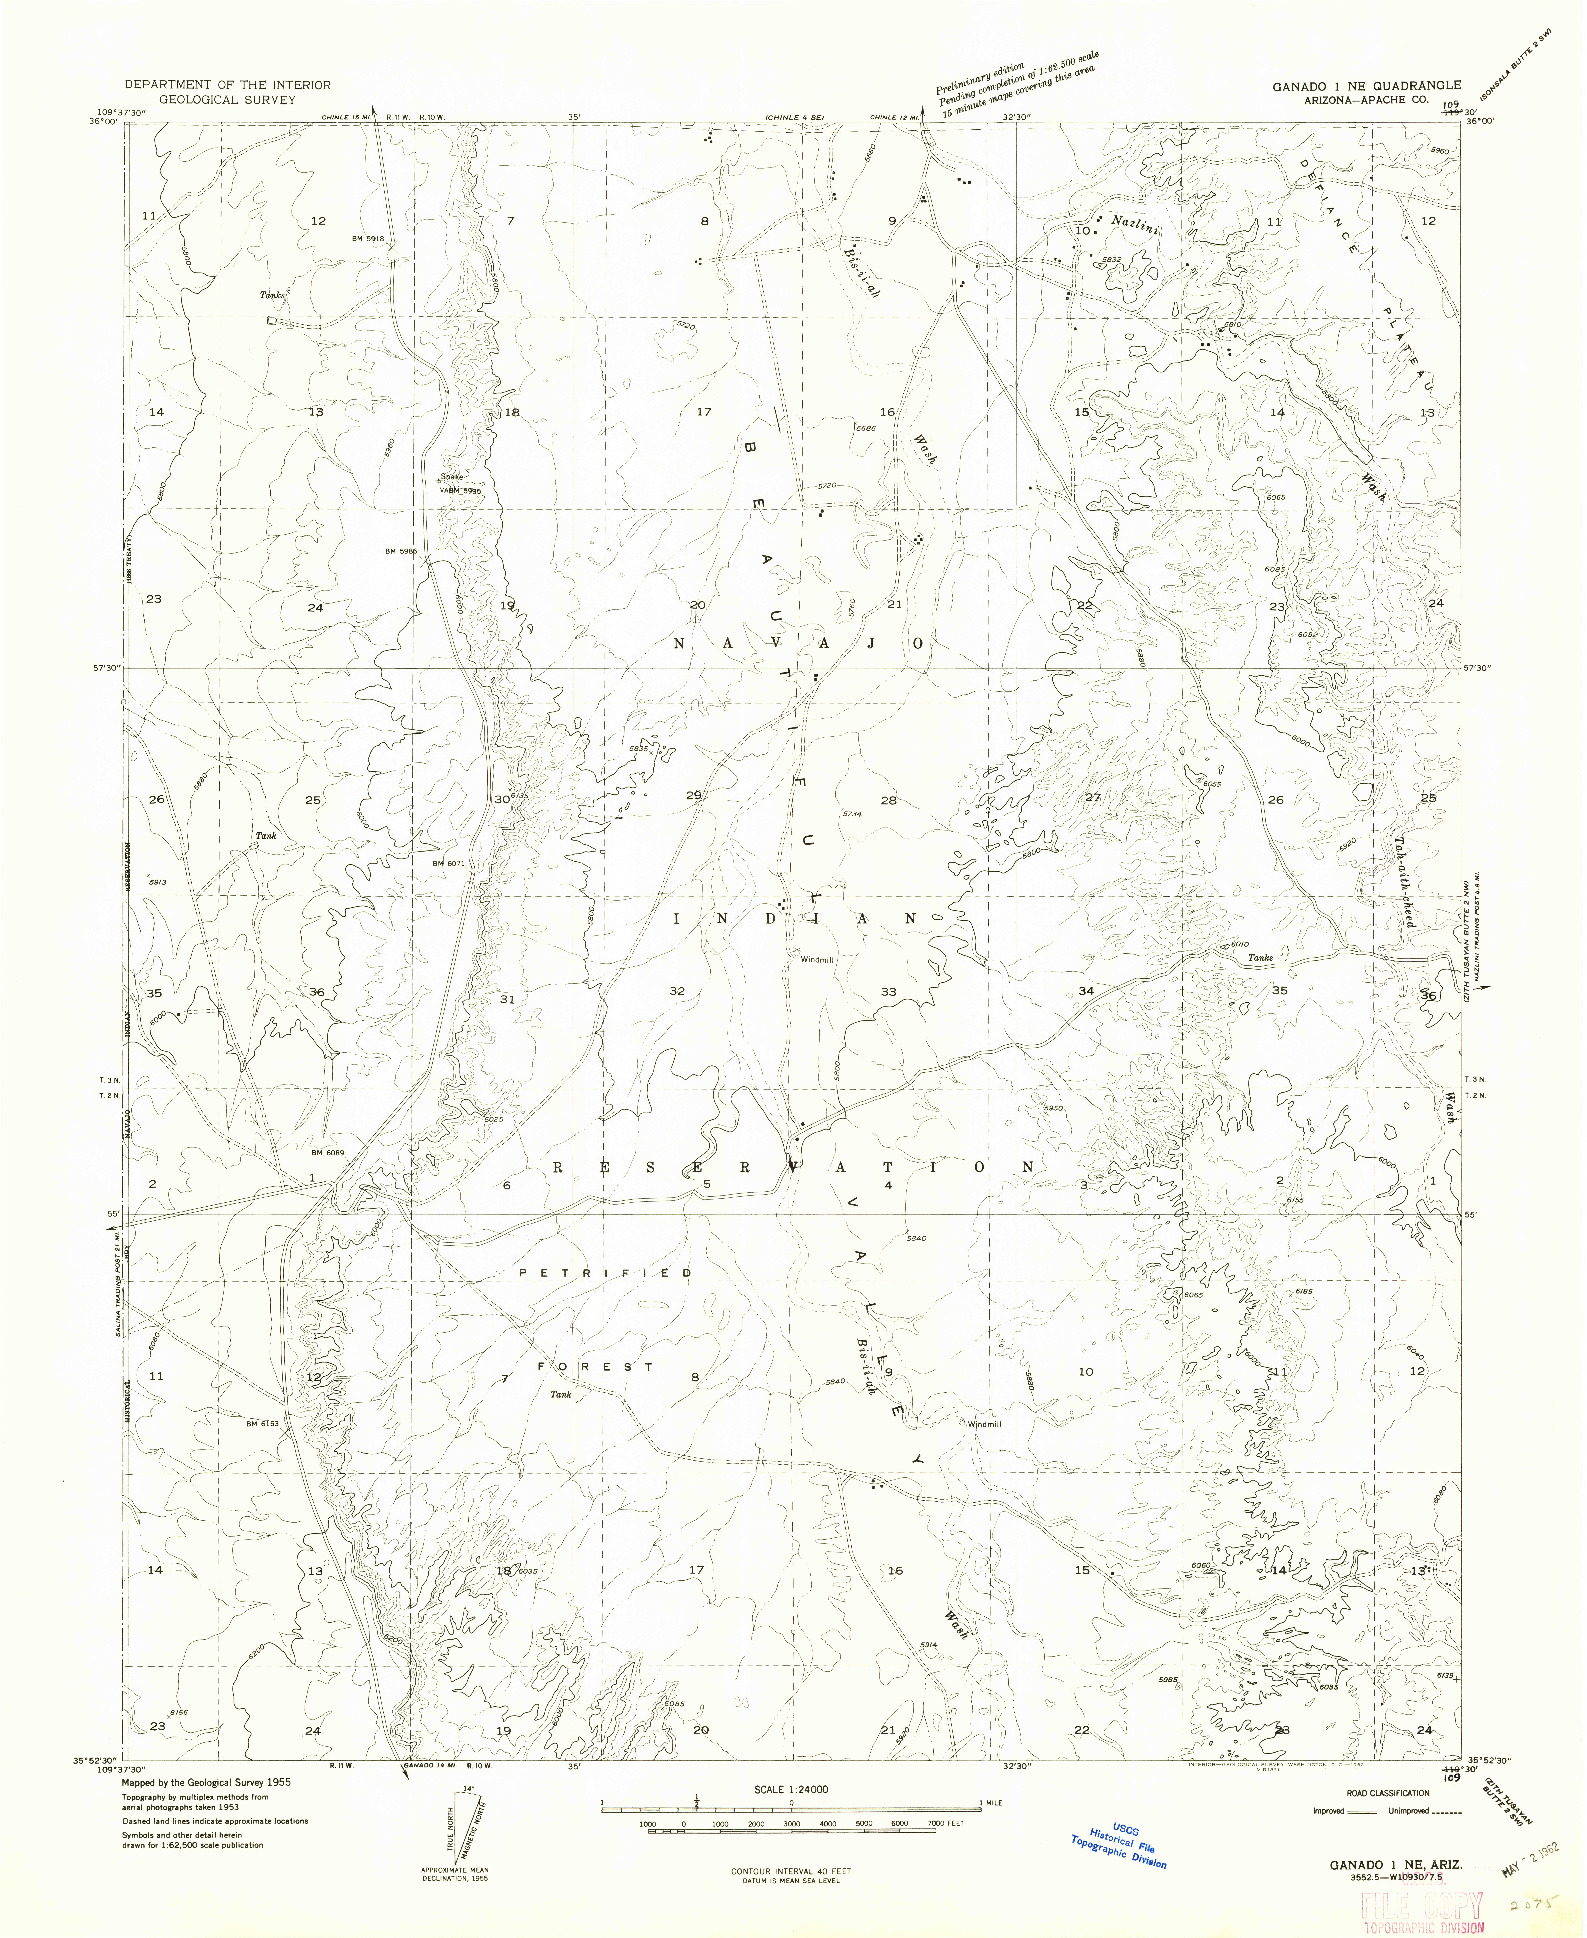 USGS 1:24000-SCALE QUADRANGLE FOR GANADO 1 NE, AZ 1955